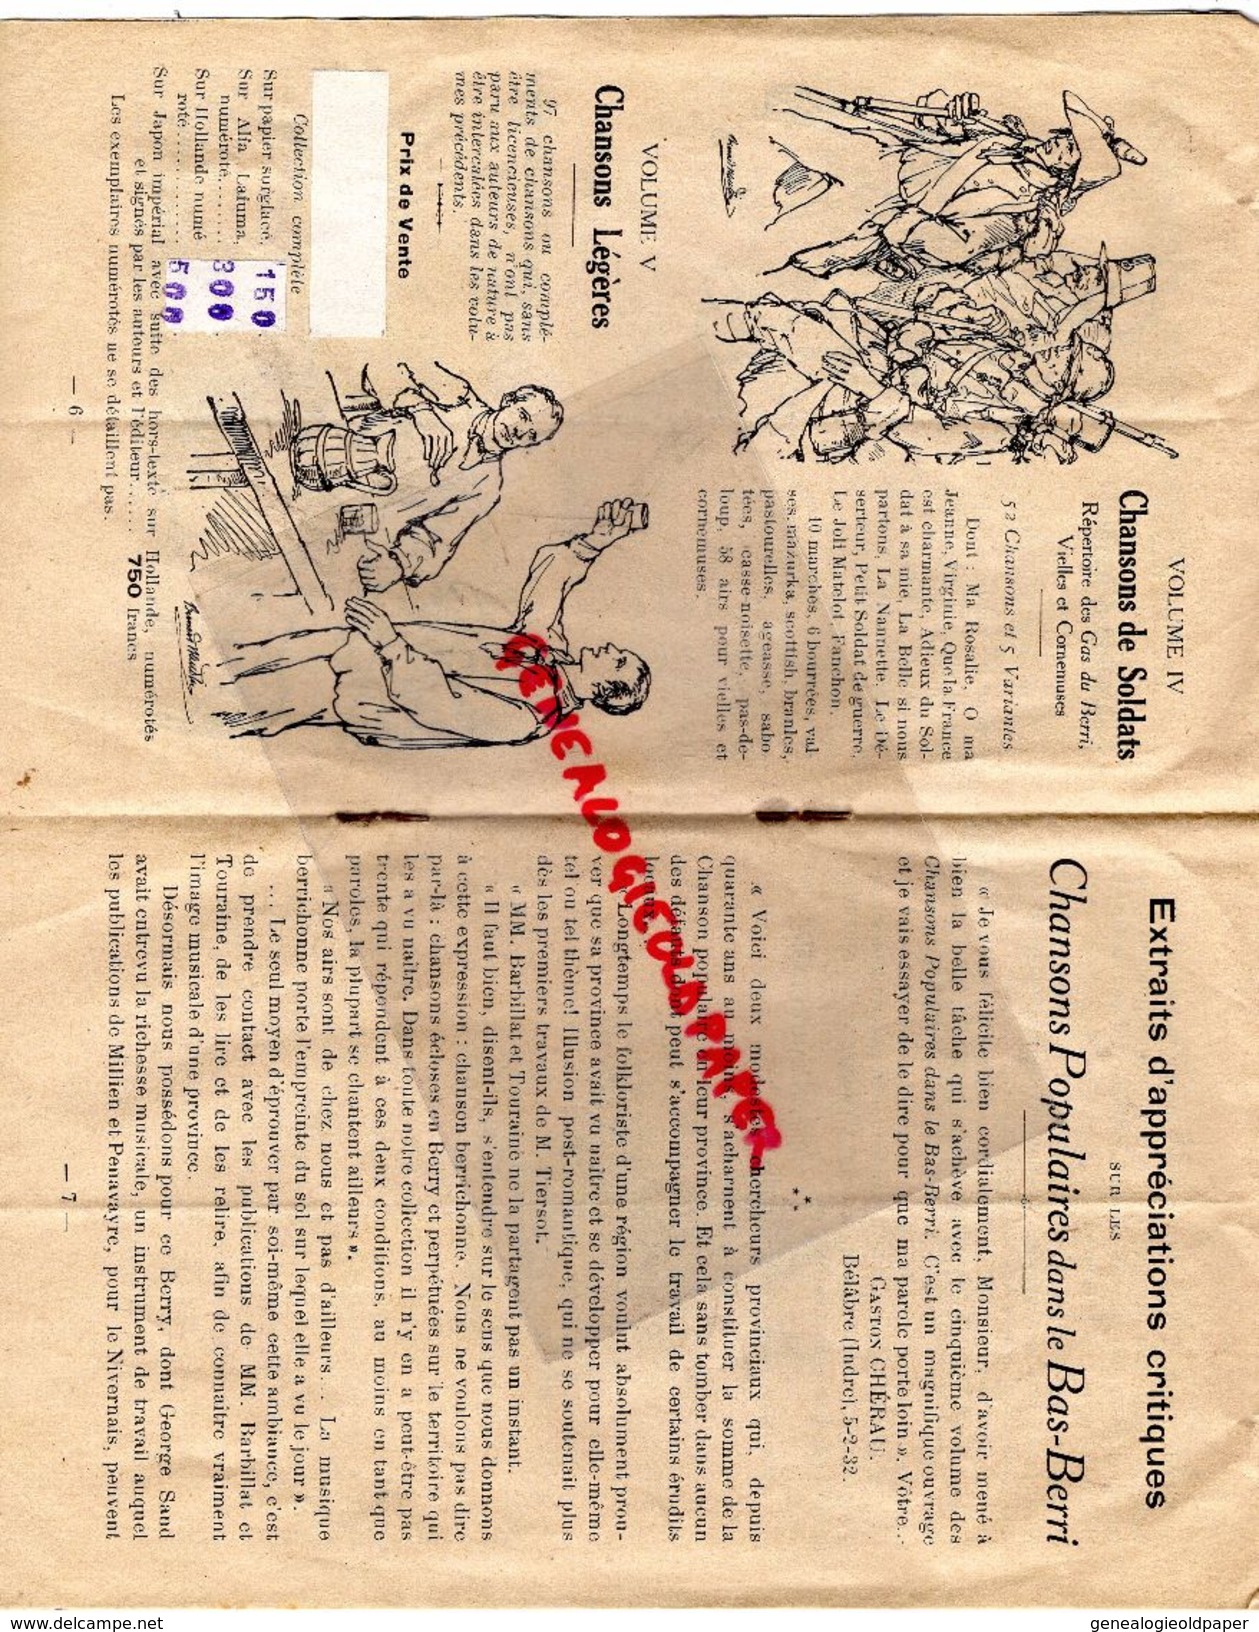 36- CHATEAUROUX-75- PARIS-LIVRET EDITIONS DU GARGAILLOU-1937-MAURICE DURAY-BERRI-CHANSONS BERGERE-AMOUR-BARBILLAT NIGOND - Documenti Storici